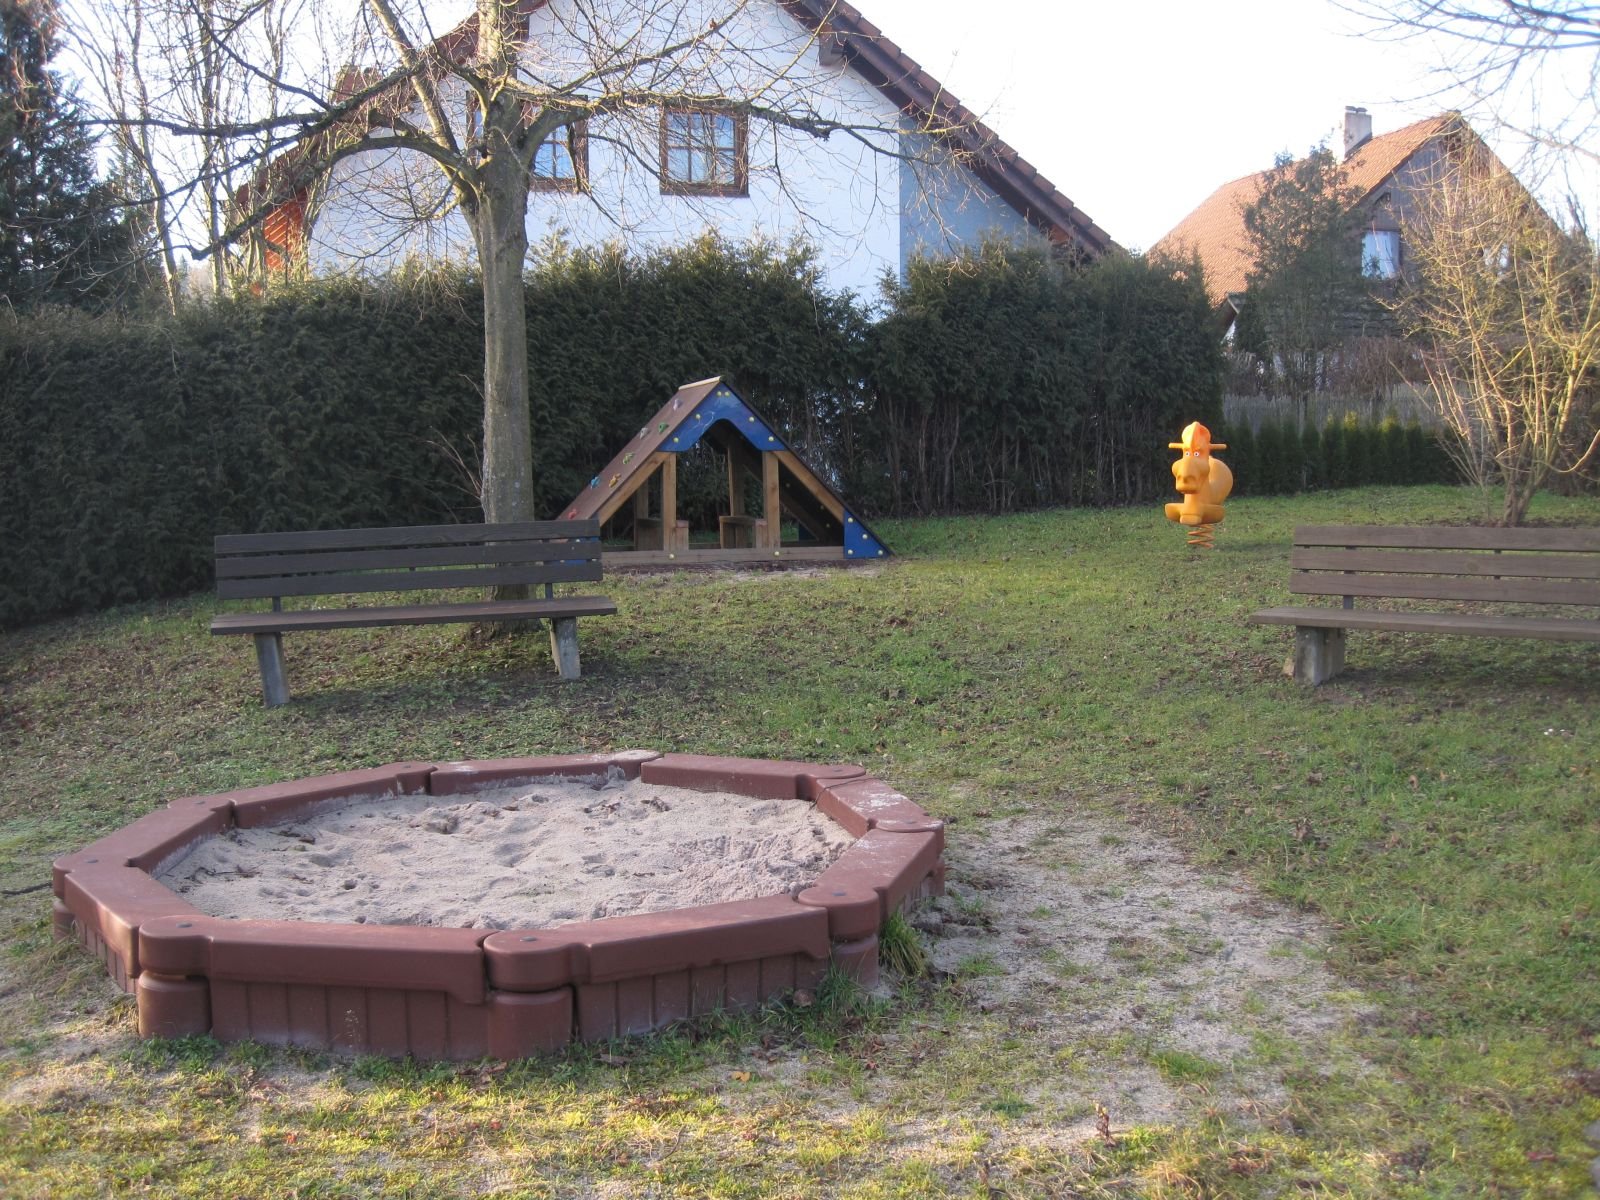                                                     Spielplatz Dornburger Straße                                    